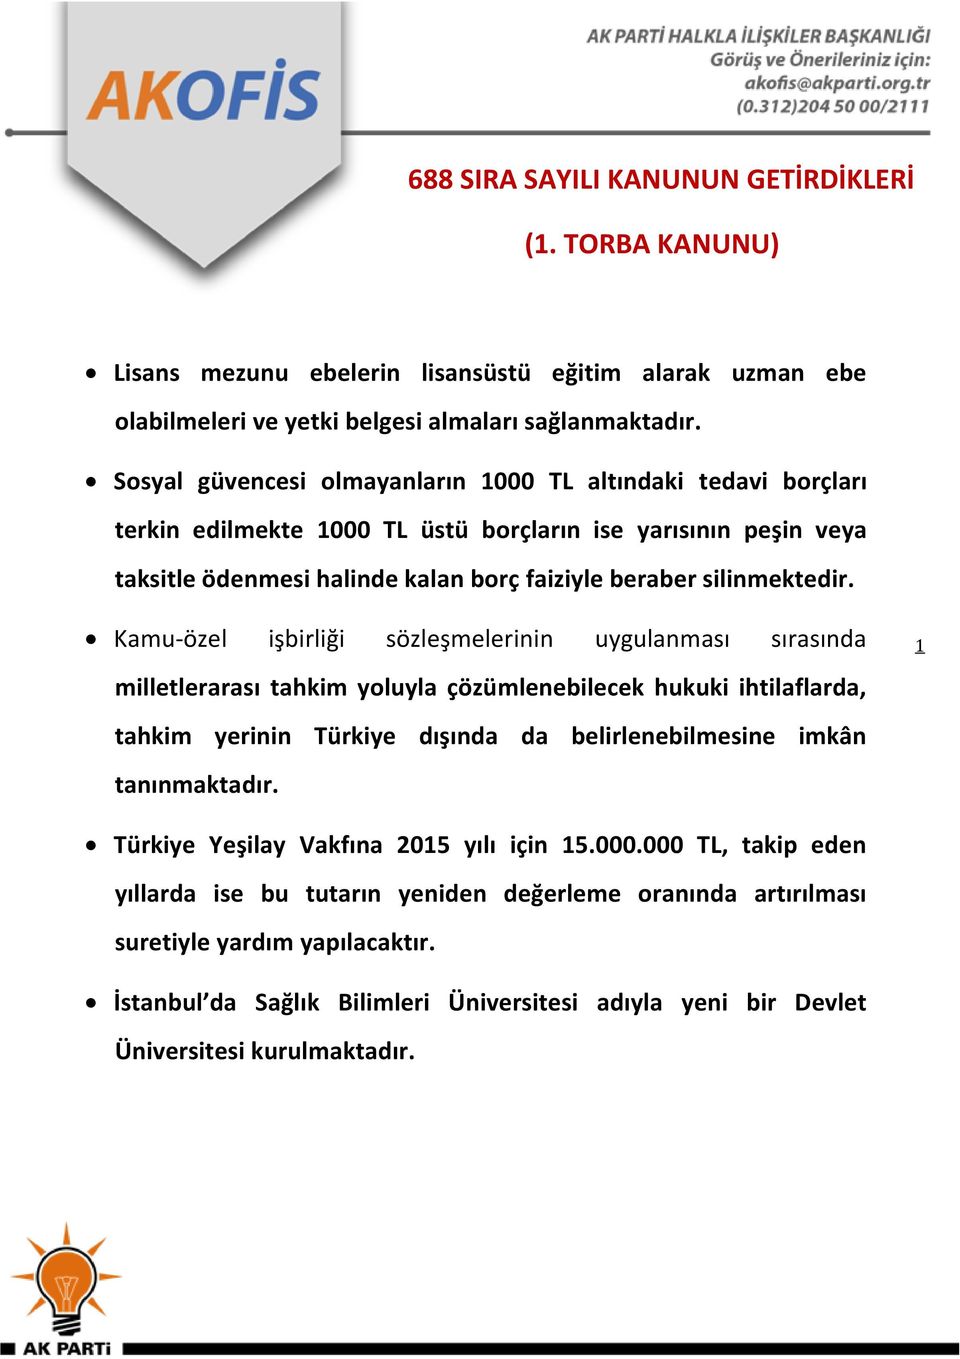 Kamu-özel işbirliği sözleşmelerinin uygulanması sırasında milletlerarası tahkim yoluyla çözümlenebilecek hukuki ihtilaflarda, tahkim yerinin Türkiye dışında da belirlenebilmesine imkân tanınmaktadır.